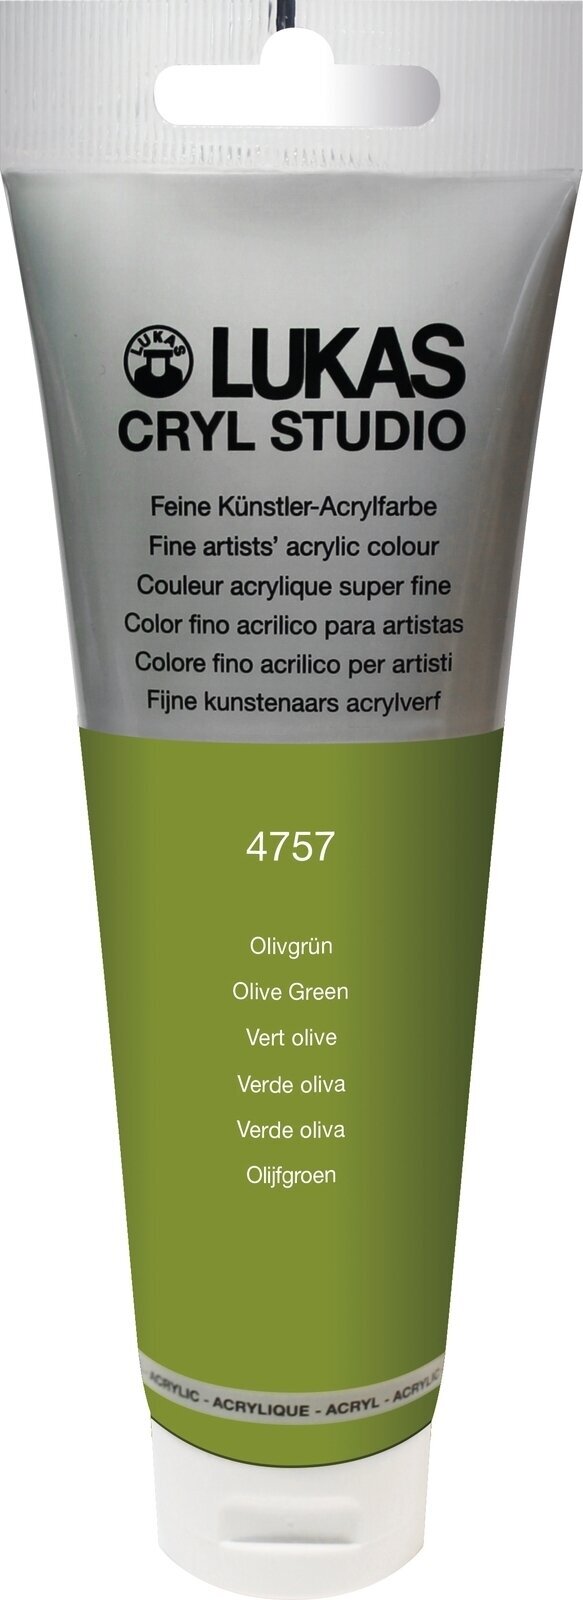 Colore acrilico Lukas Cryl Studio Colori acrilici 125 ml Olive Green